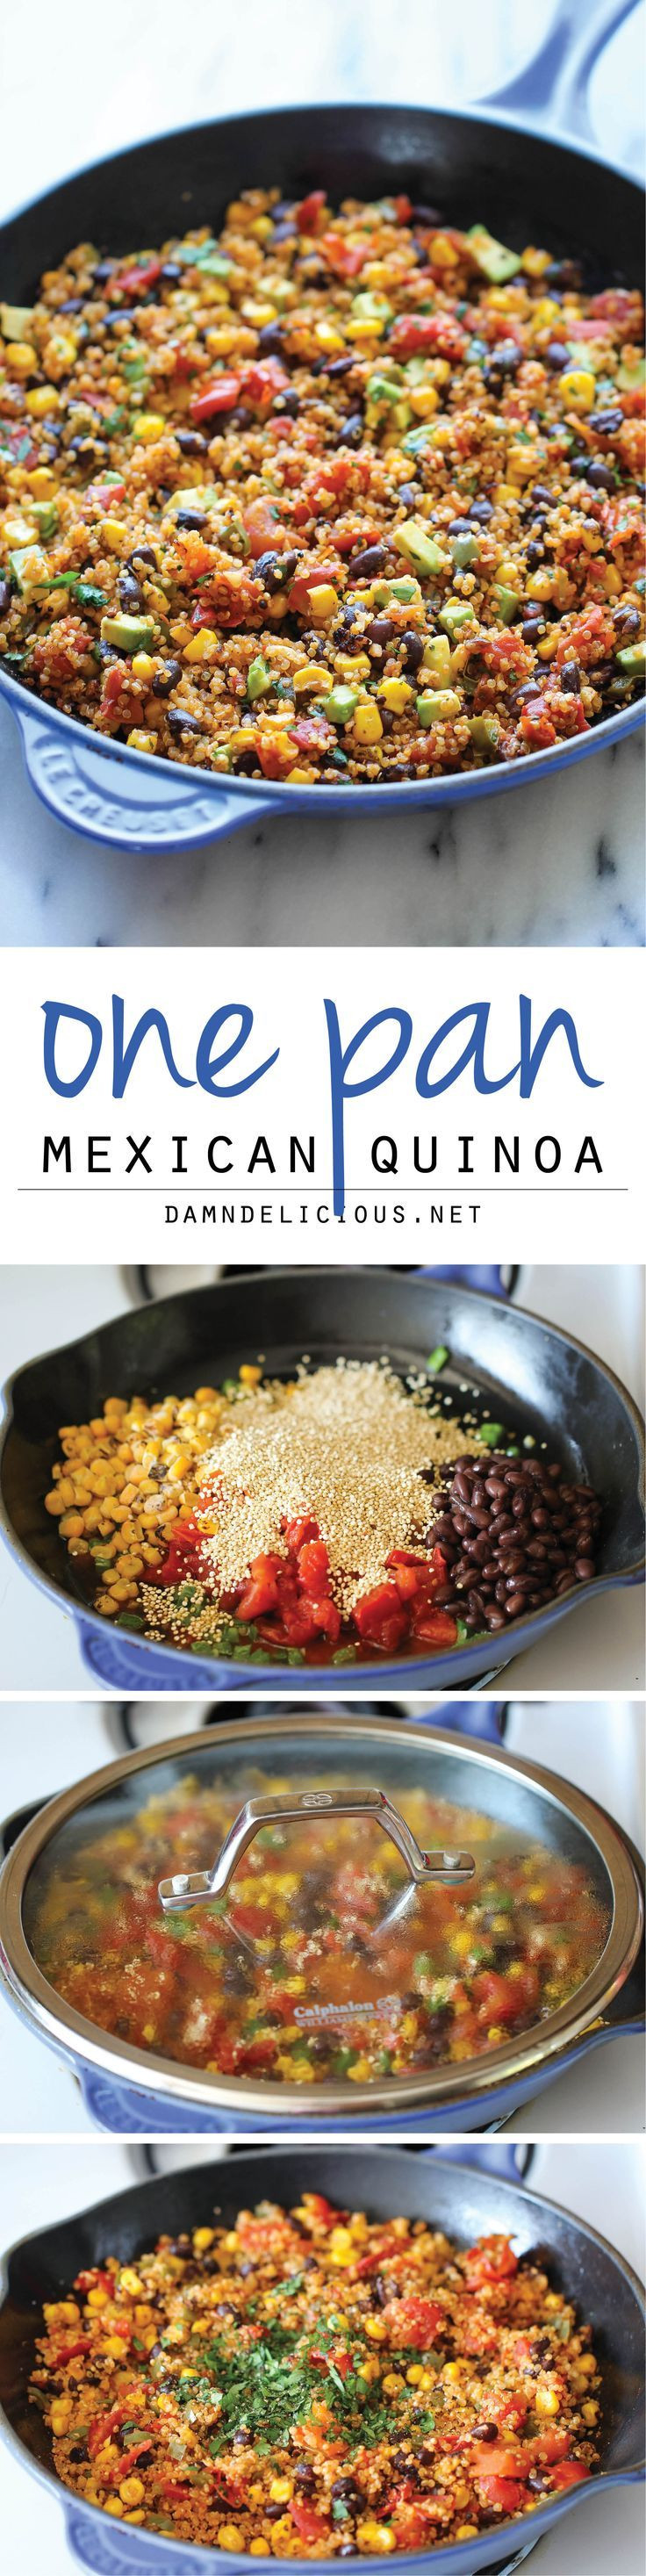 One Pan Mexican Quinoa